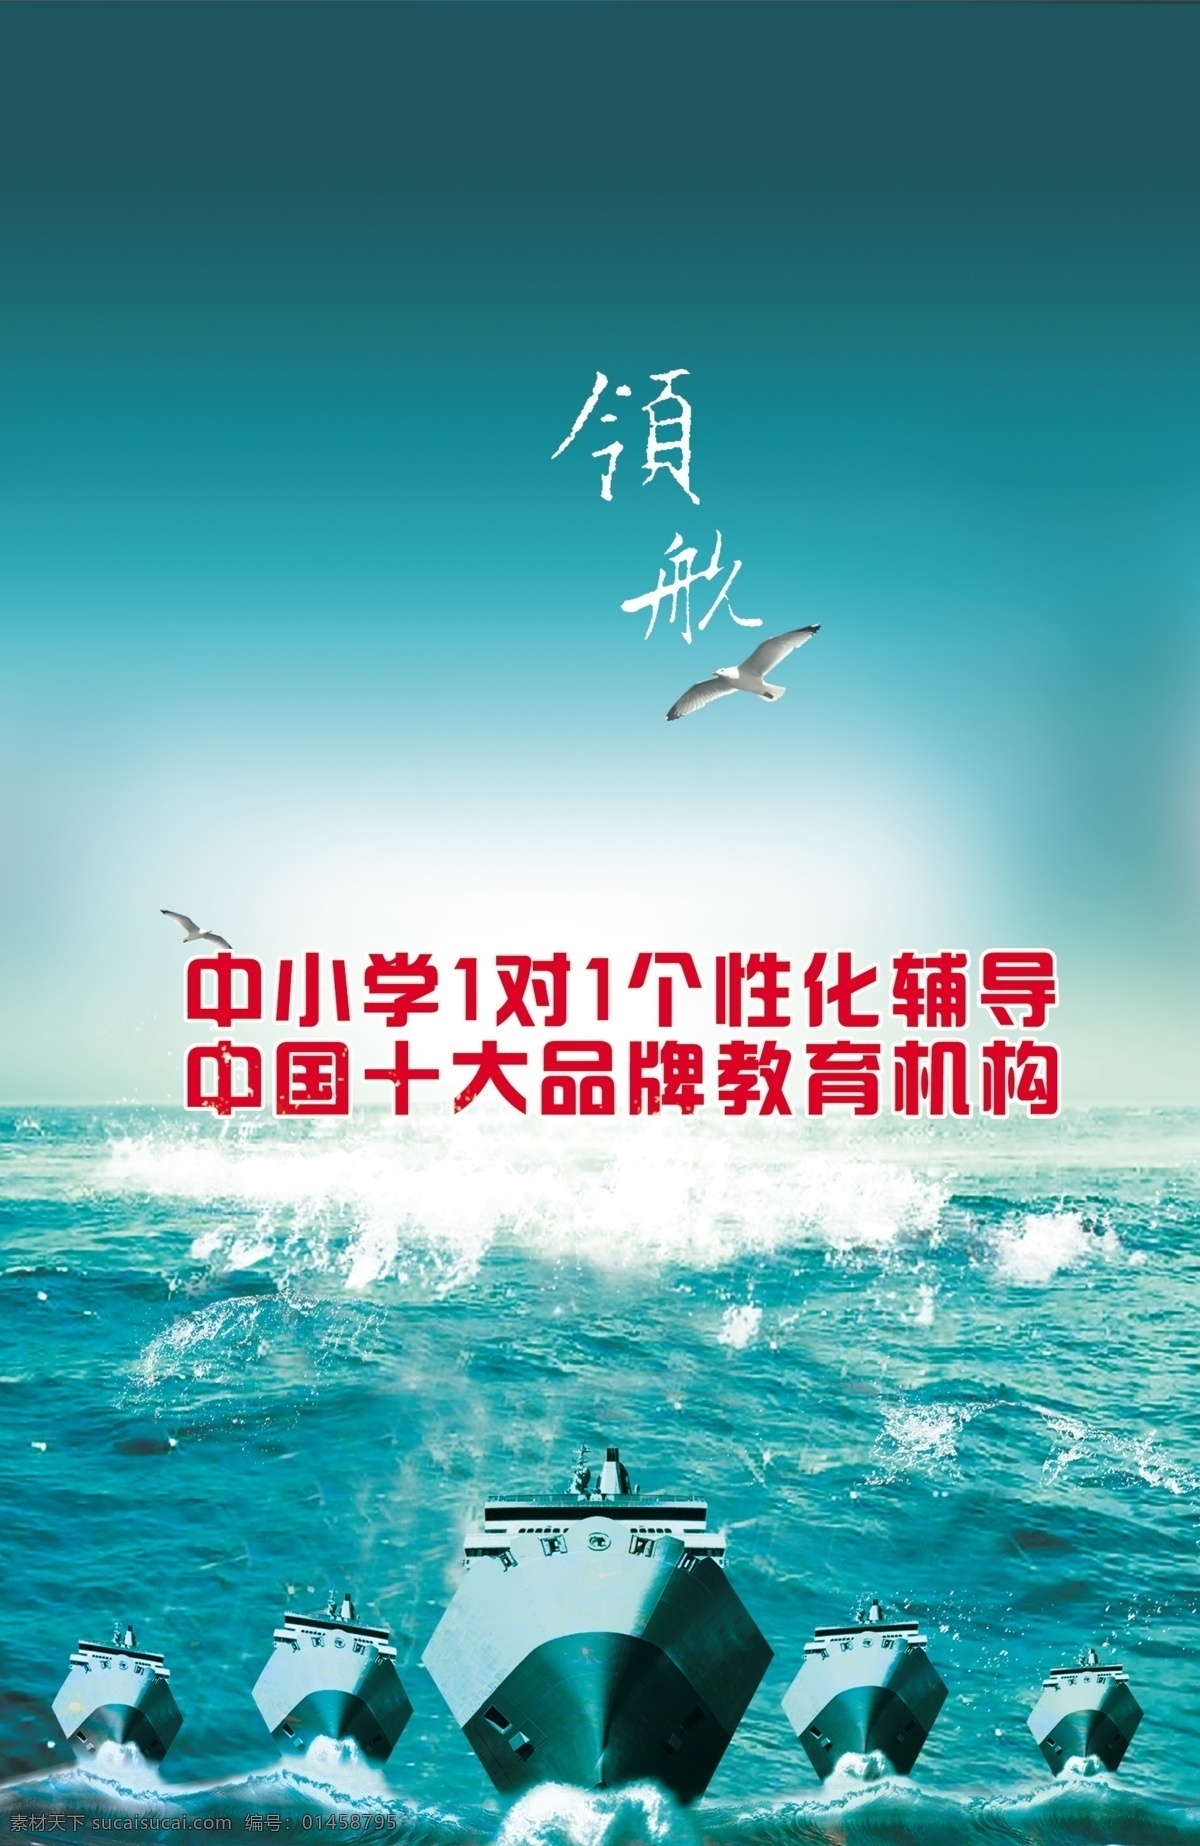 教育机构宣传 中文字 飞鸟 大海 轮船 海水 绿色天空 国内广告设计 广告设计模板 源文件